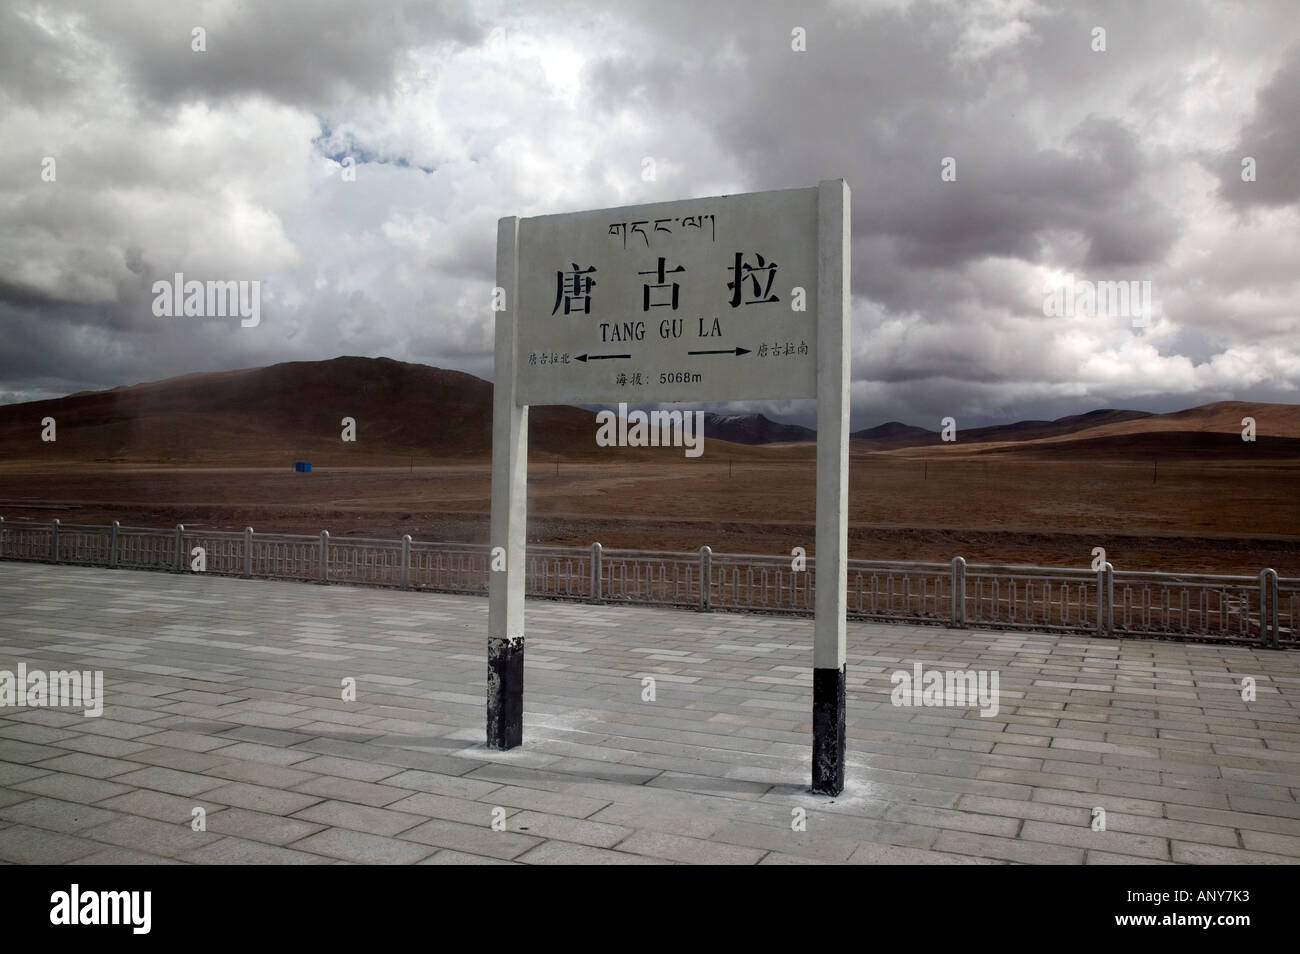 Segno per Tangula Pass, Qingzang/Qinghai-Xizang treno, la più alta del mondo ferroviario, il Tibet. Lhasa, in Tibet Foto Stock